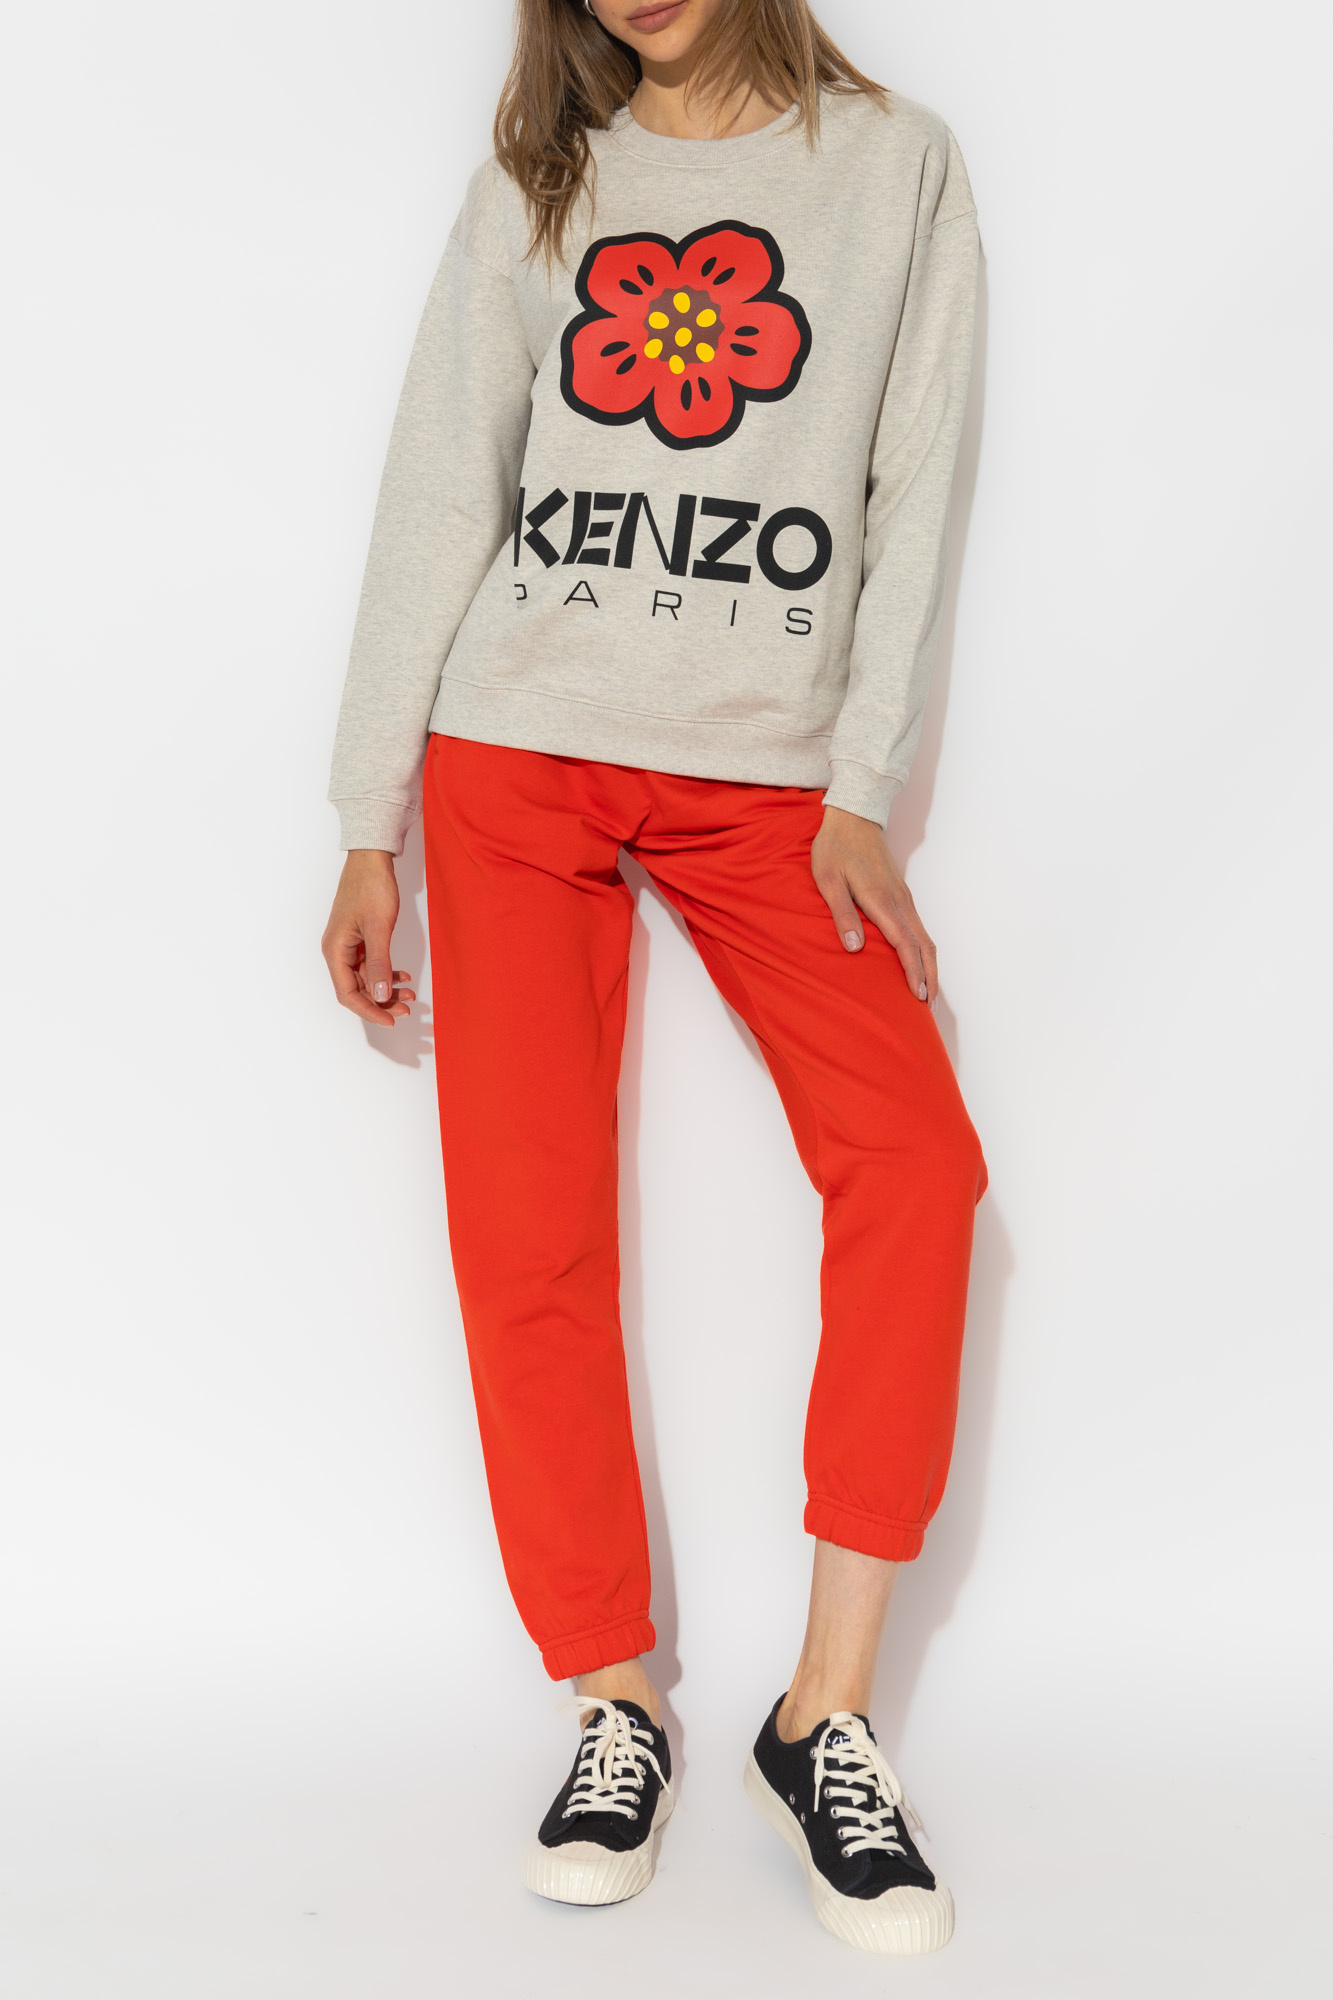 Kenzo loose sweatshirt with logo